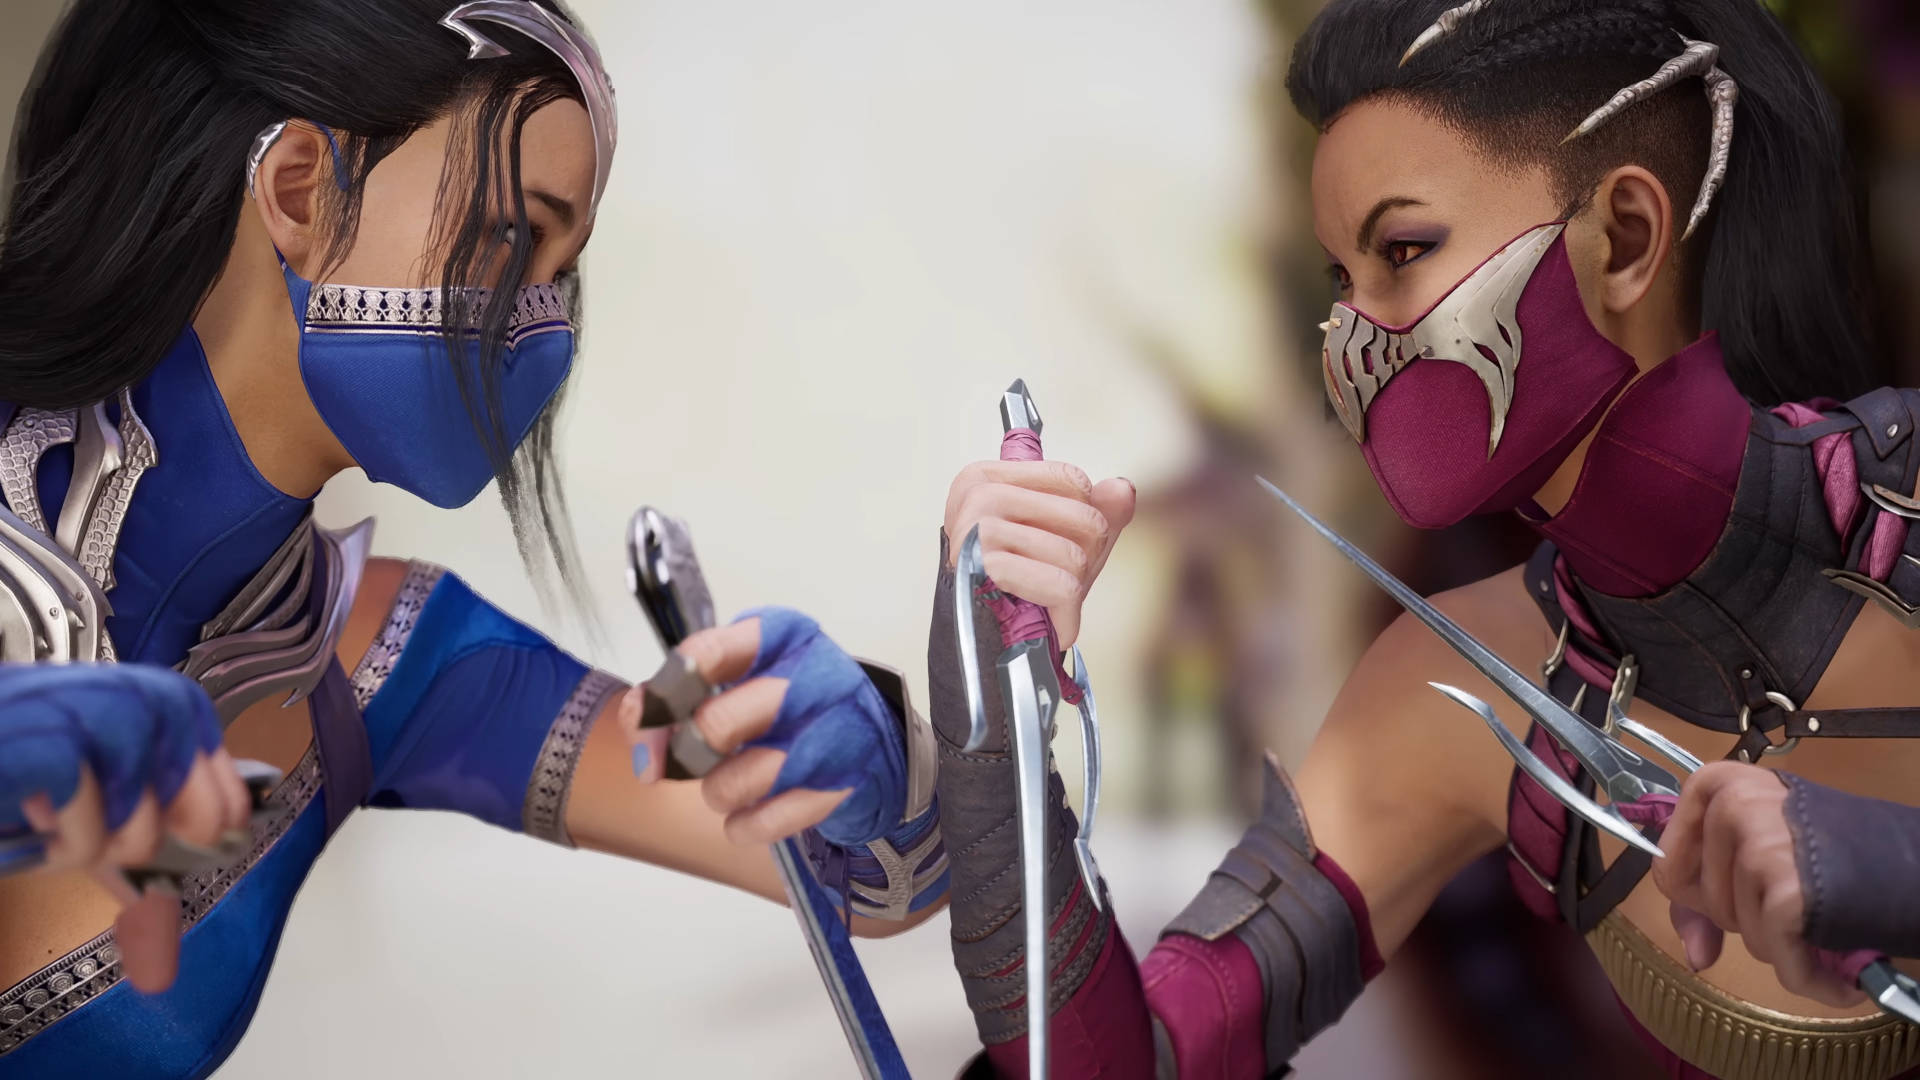 Kitana y Mileena son personajes jugables confirmados de Mortal Kombat 1, que se enfrentan antes de que comience la pelea.